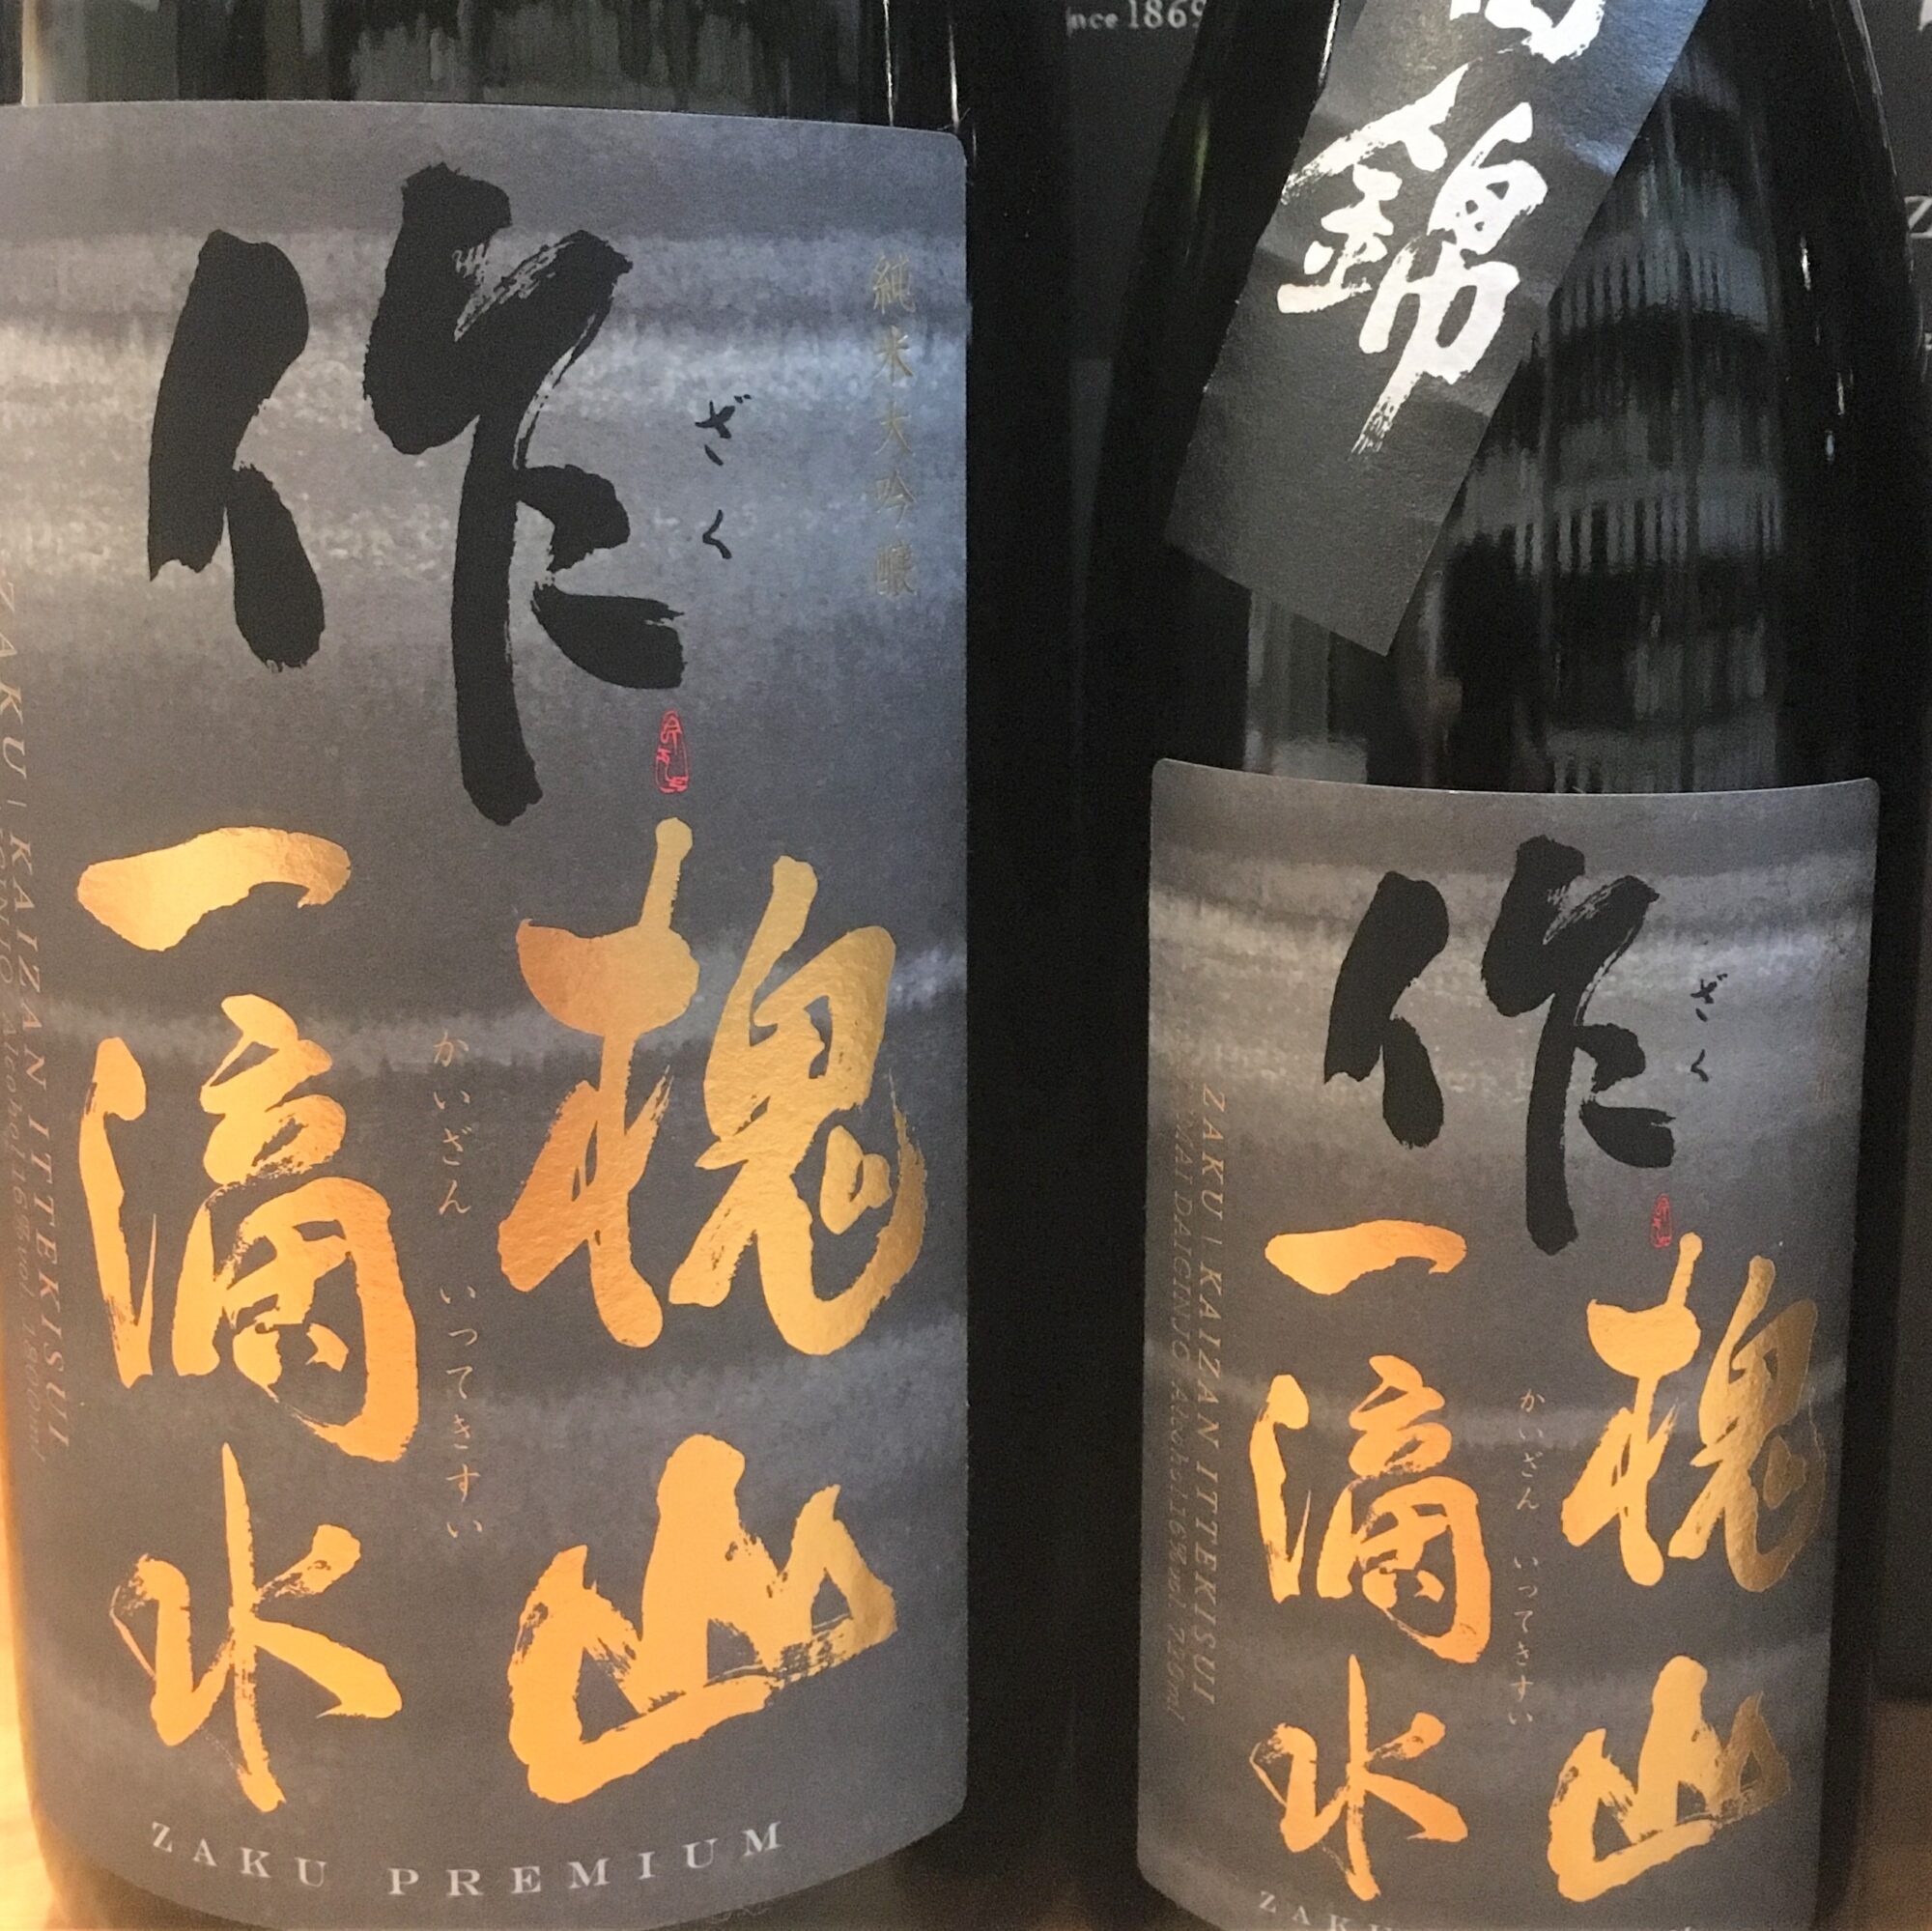 三重県 作の純米吟醸 酒米シリーズ「山田錦」が新発売になりました